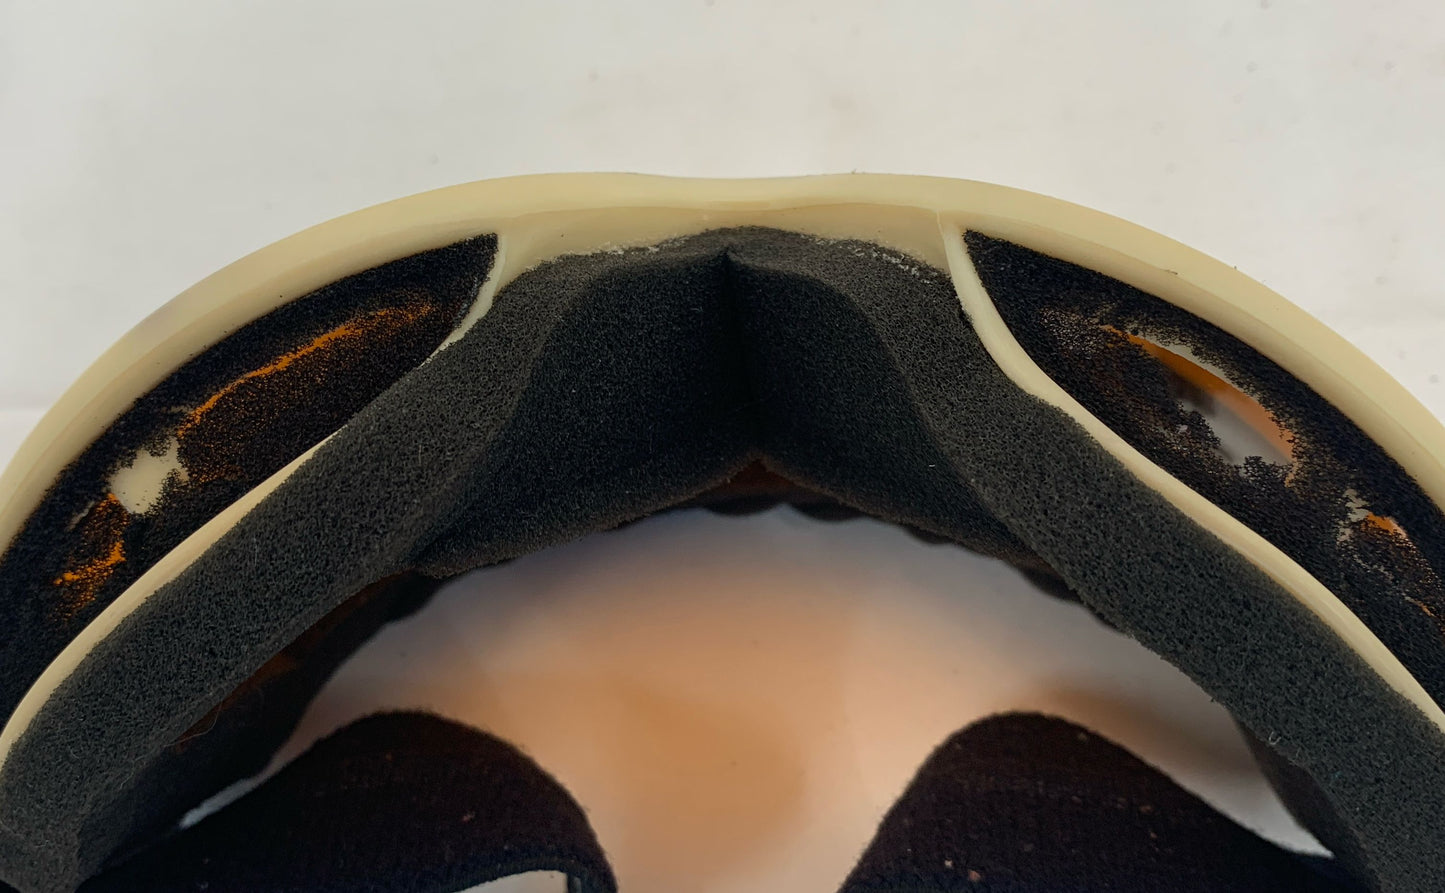 Vintage Smith Pmt Airflow Ski Goggles Orange Lens